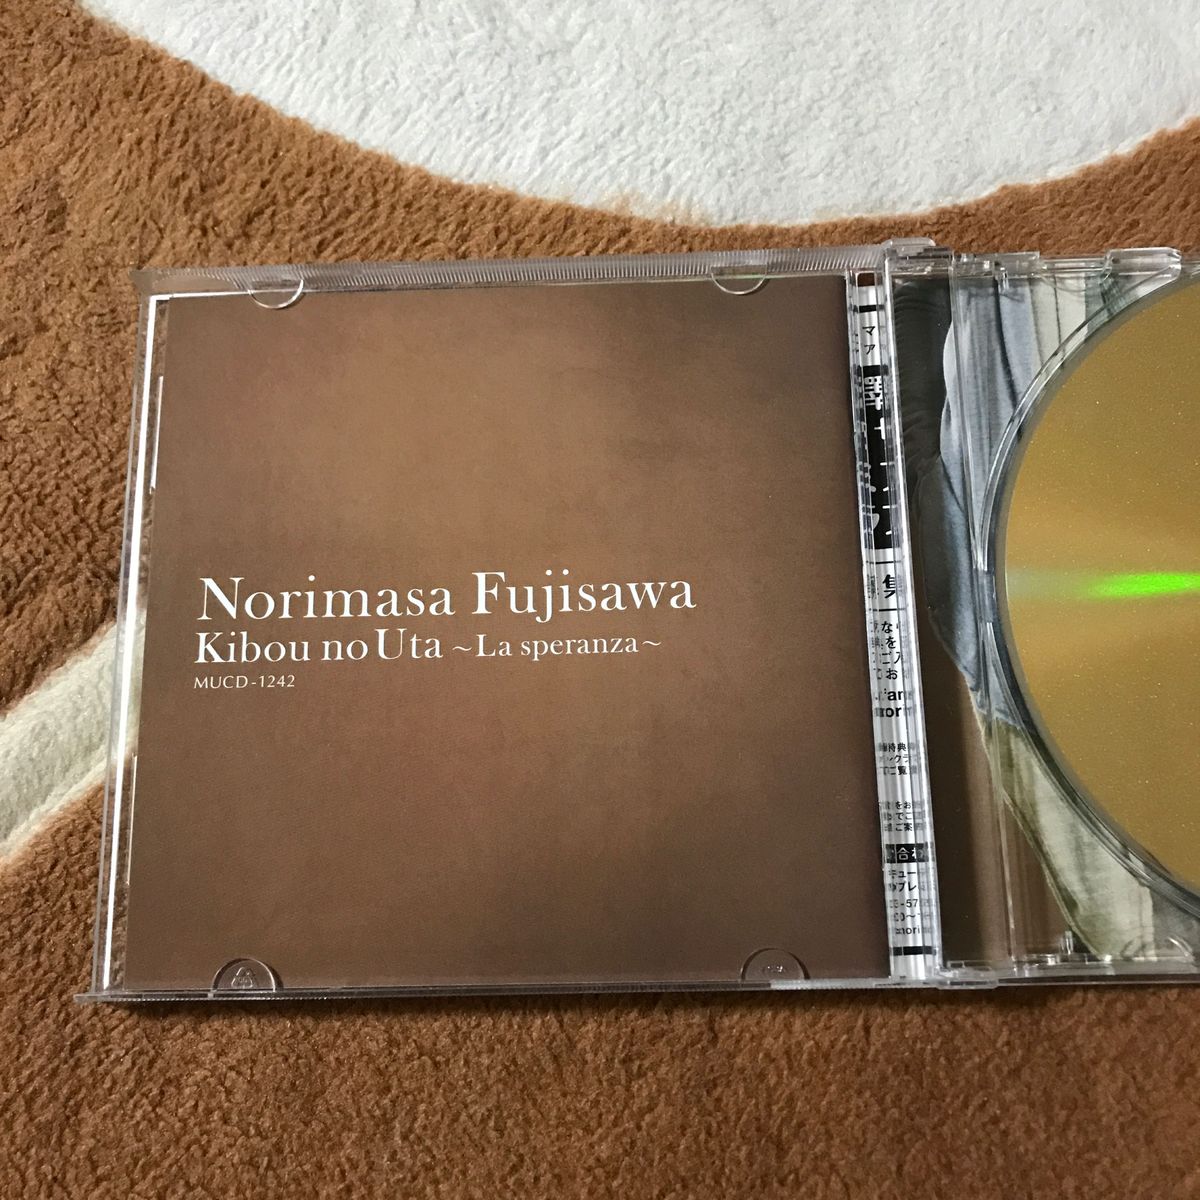 [国内盤CD] 藤澤ノリマサ/希望の歌〜La speranza〜 (ラスペランツァ)